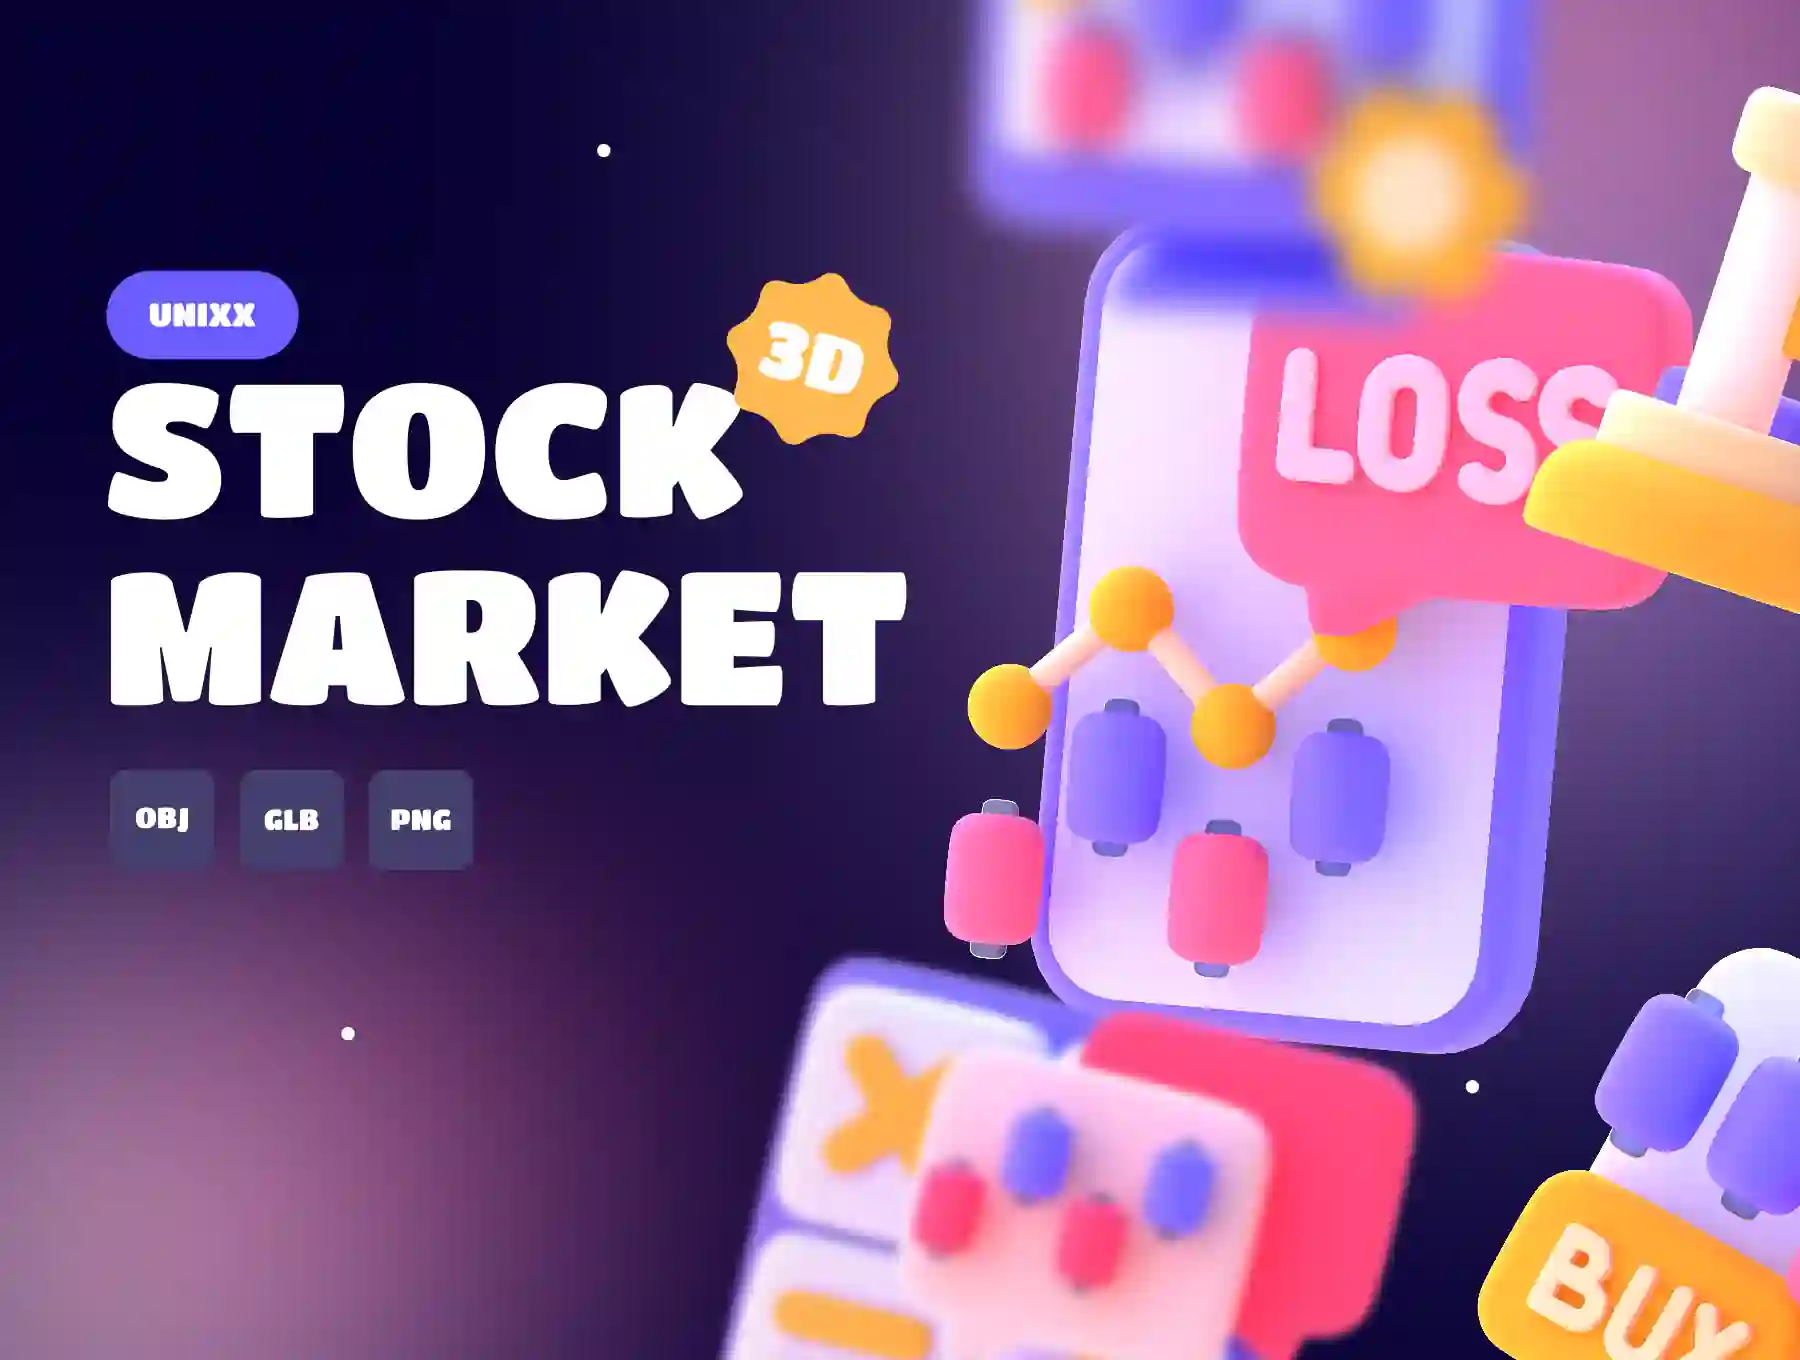 UNIXX - Stock Market Element 3D